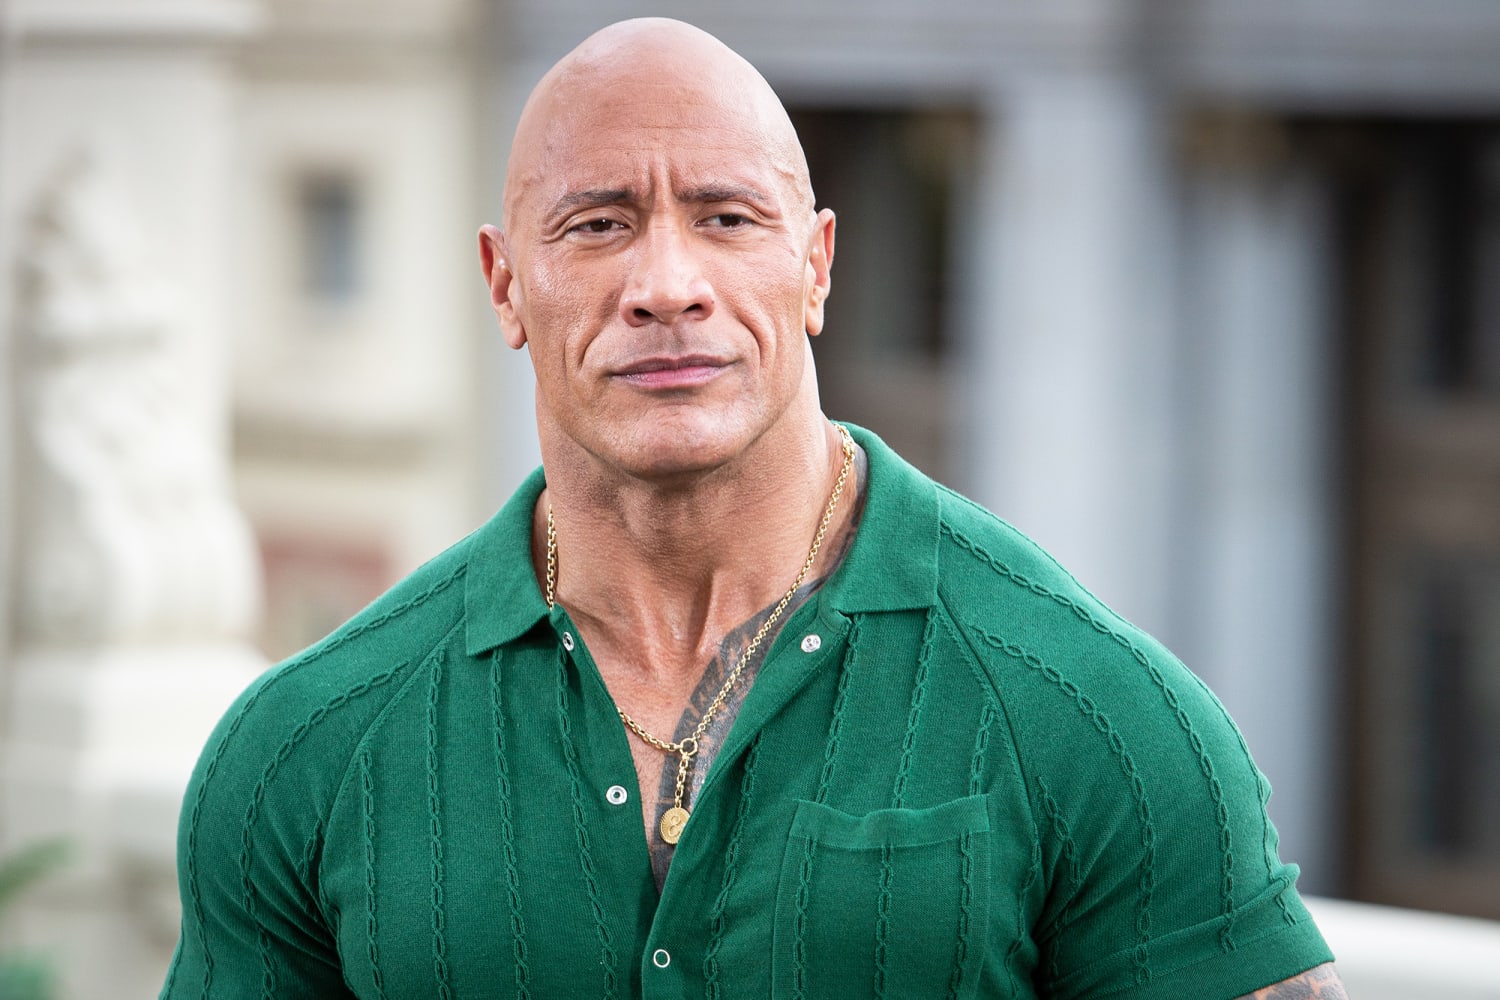 Dwayne 'The Rock' Johnson addresses backlash over Maui fund: 'I